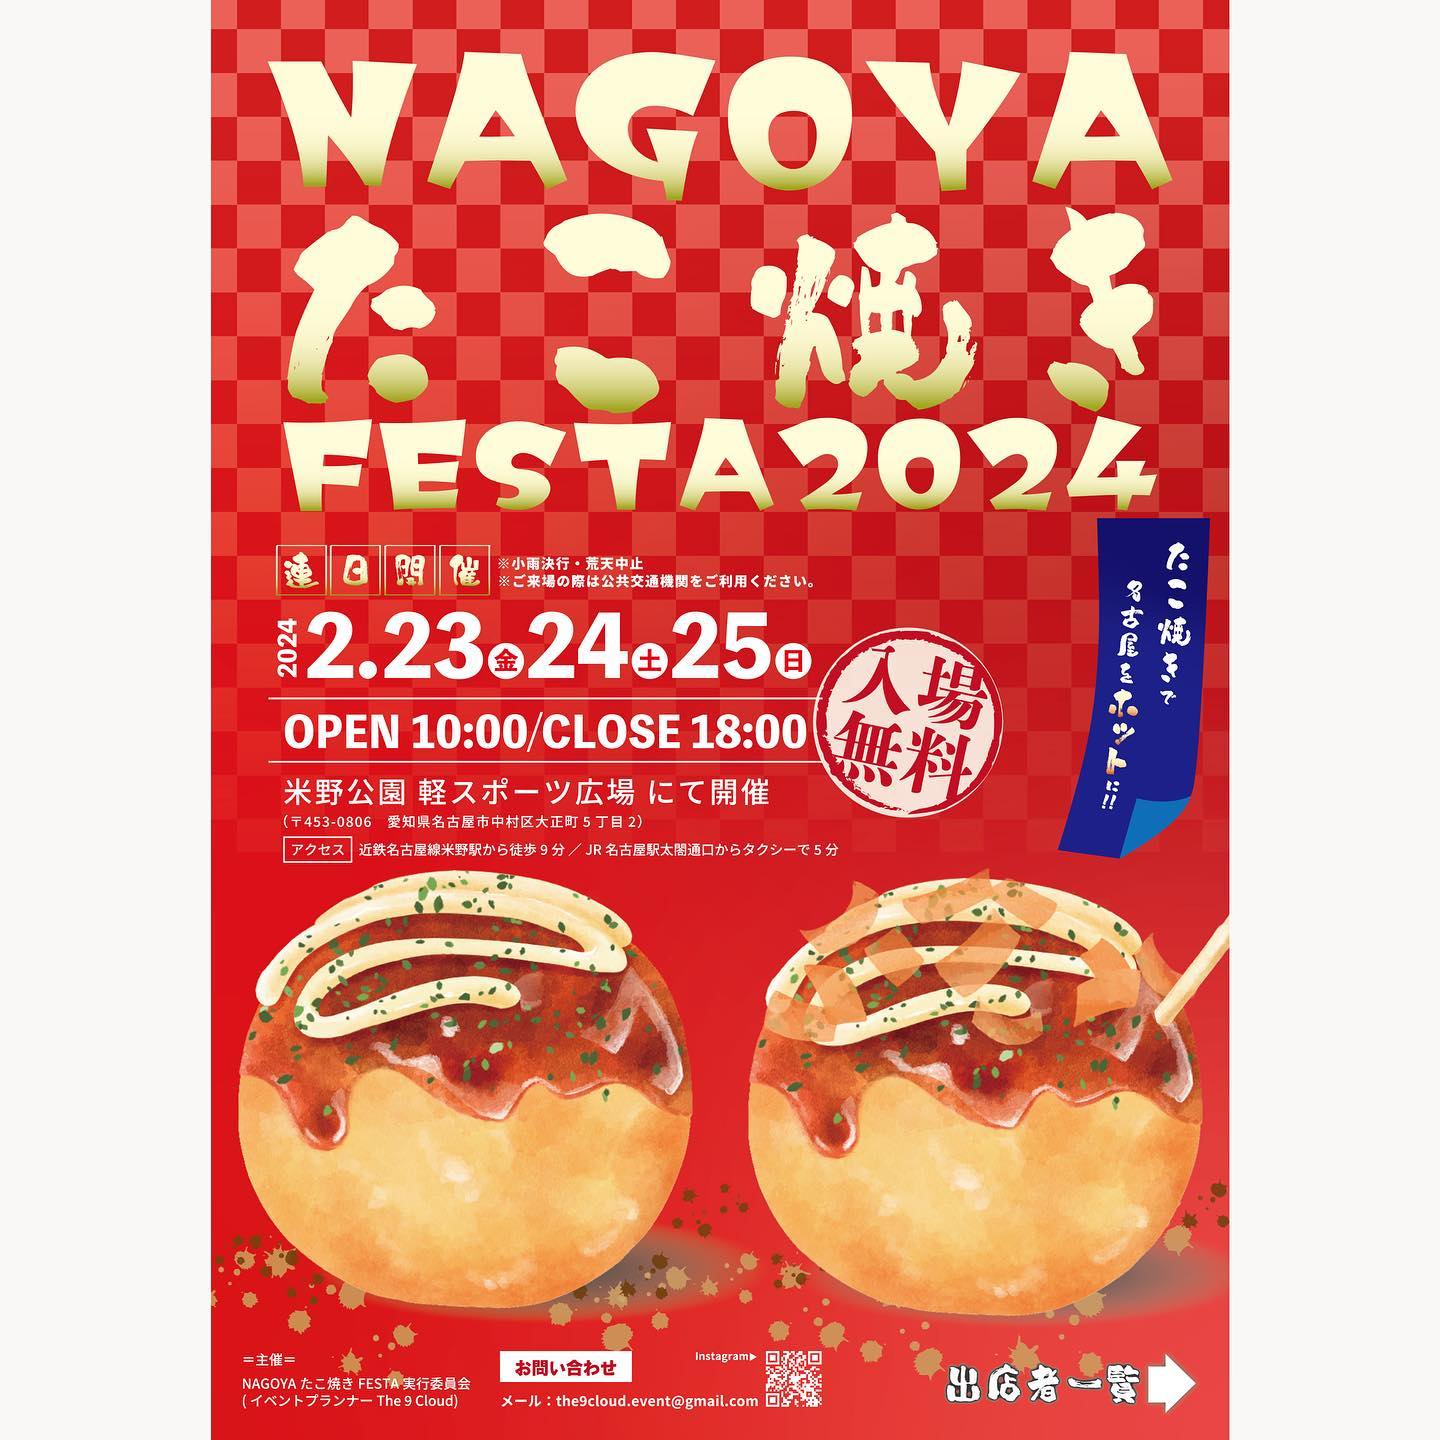 【中村区】『NAGOYAたこ焼きFESTA2024』〜たこ焼きで名古屋をホットに〜